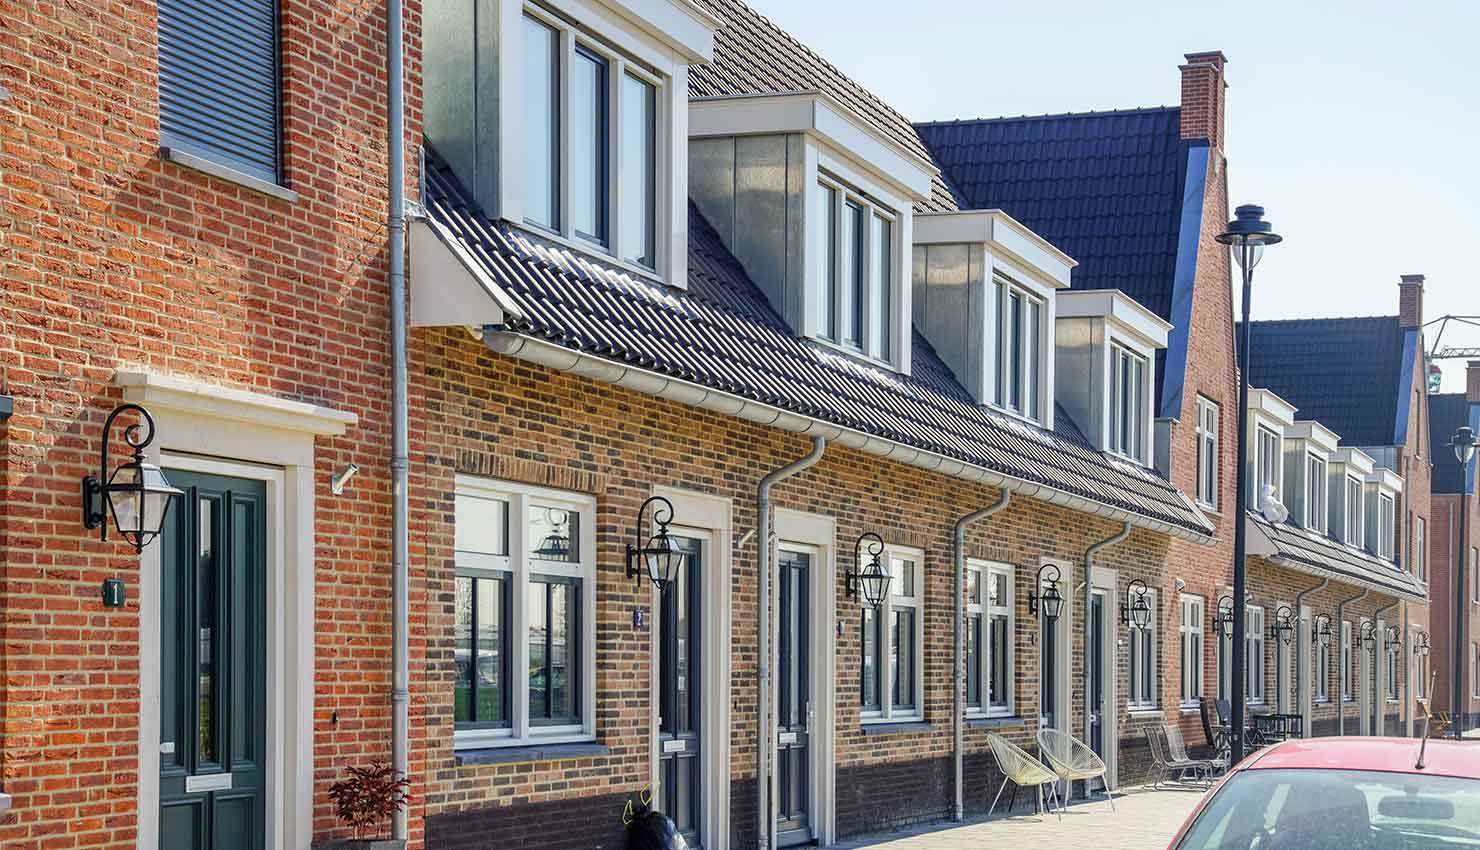 113 woningen in Noordwijk